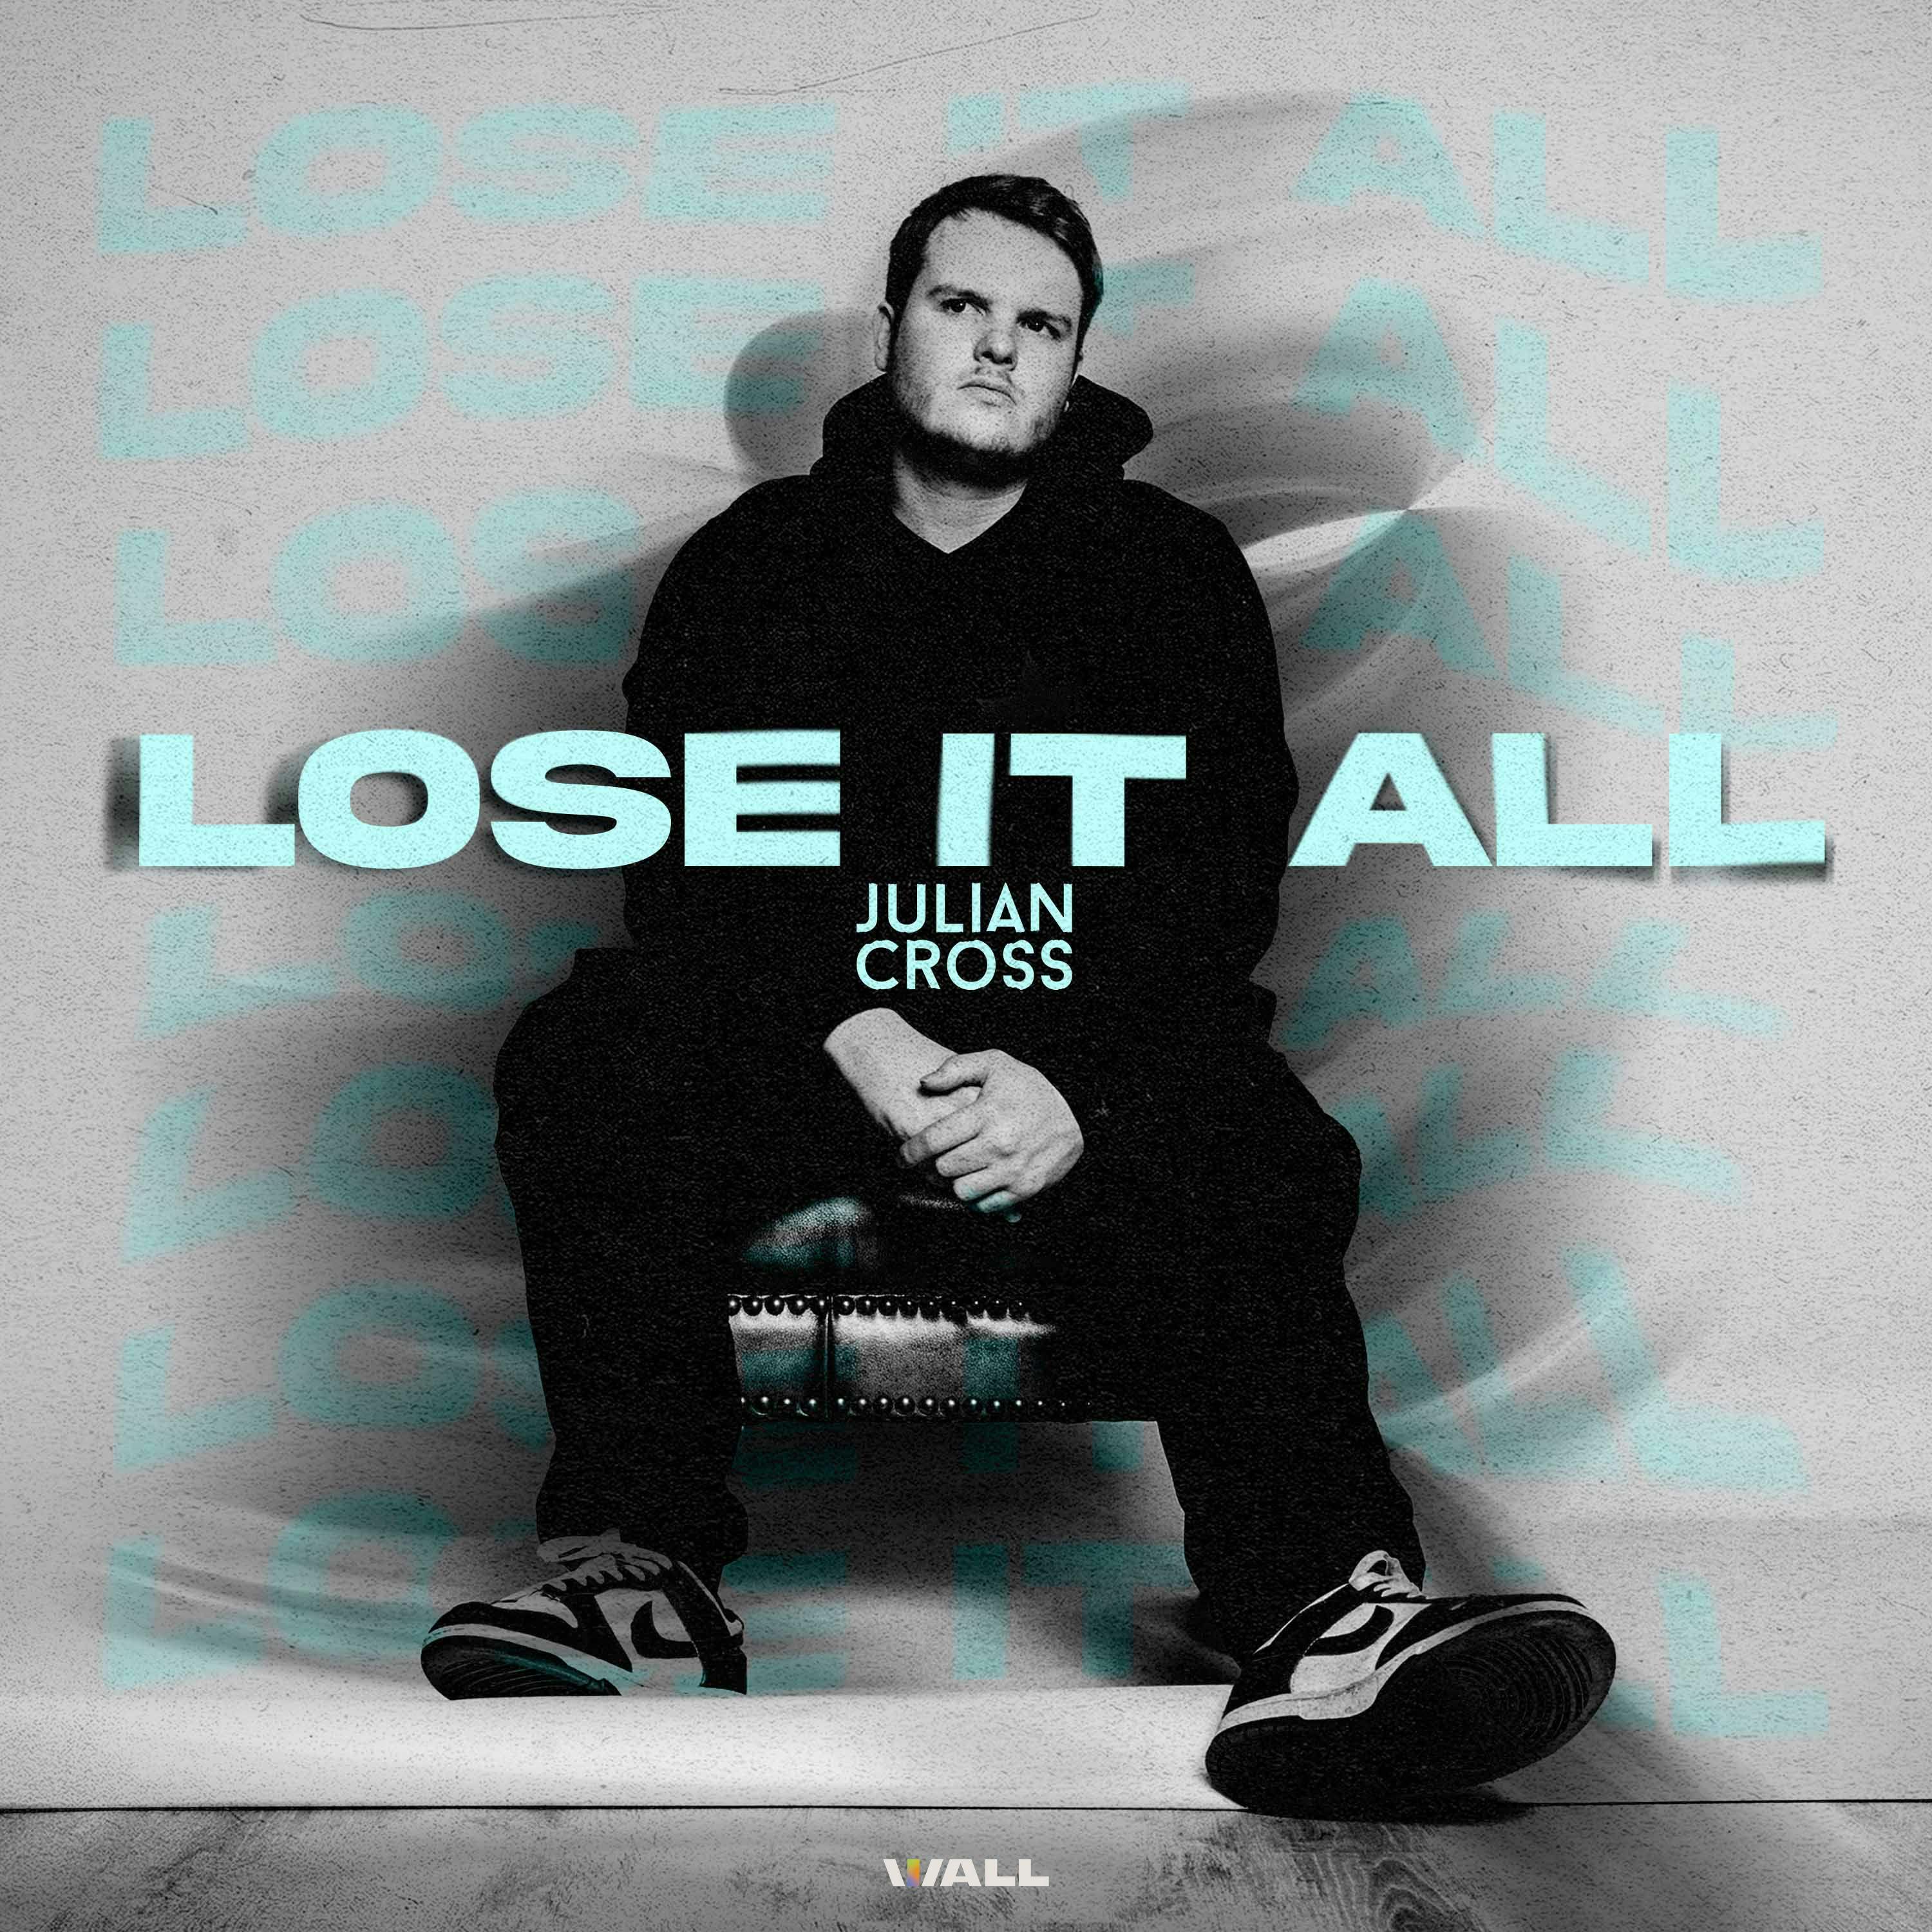 Lose It All by Julian Cross